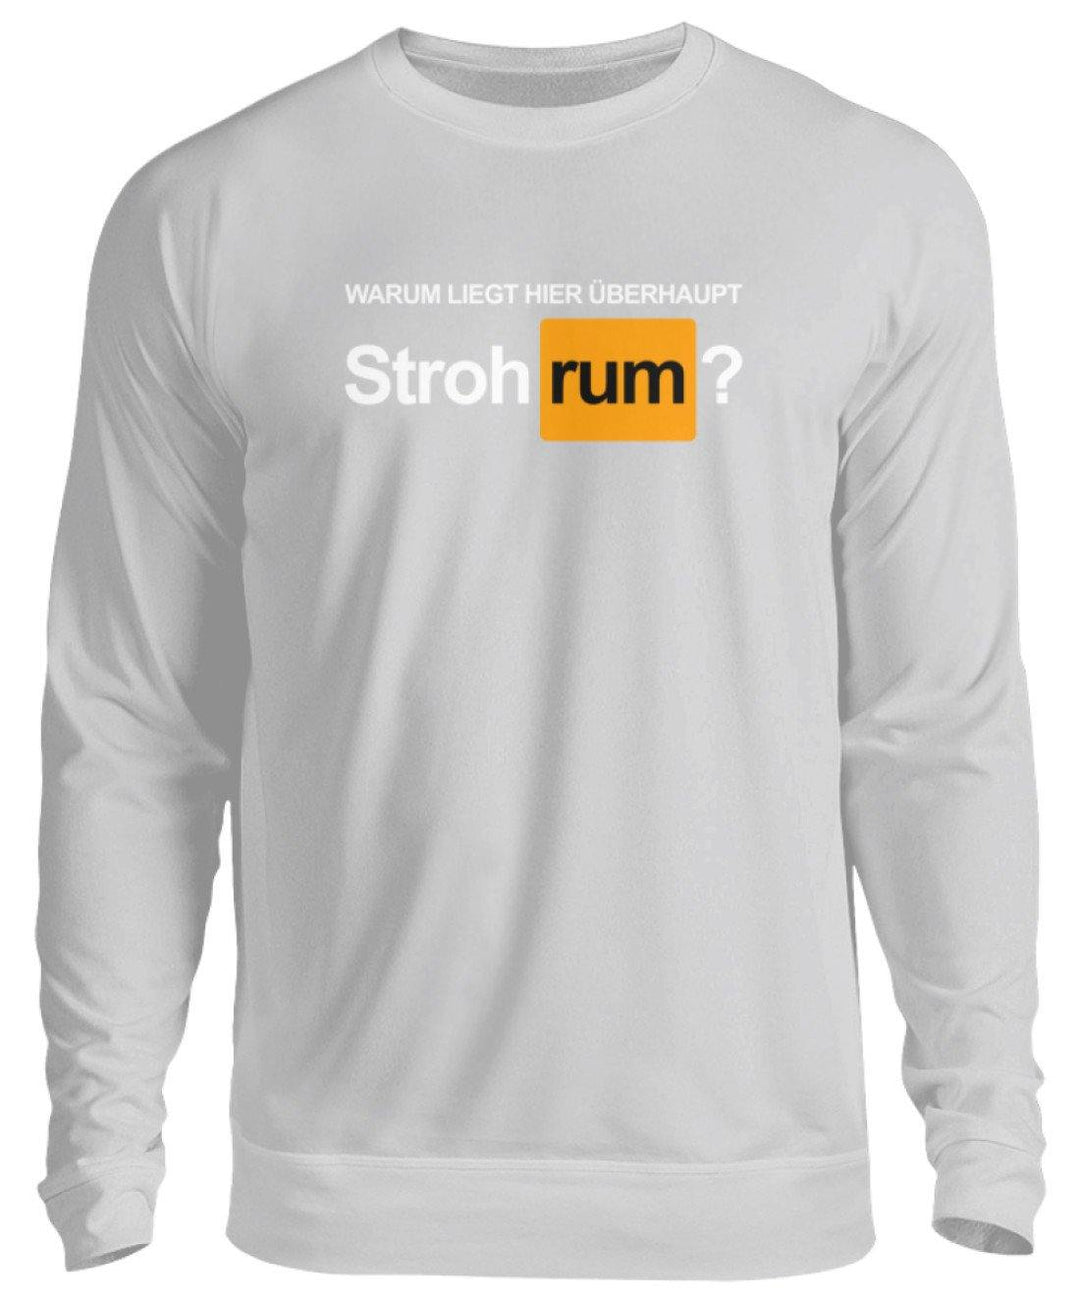 Stroh rum - Words on Shirts  - Unisex Pullover - Words on Shirts Sag es mit dem Mittelfinger Shirts Hoodies Sweatshirt Taschen Gymsack Spruch Sprüche Statement